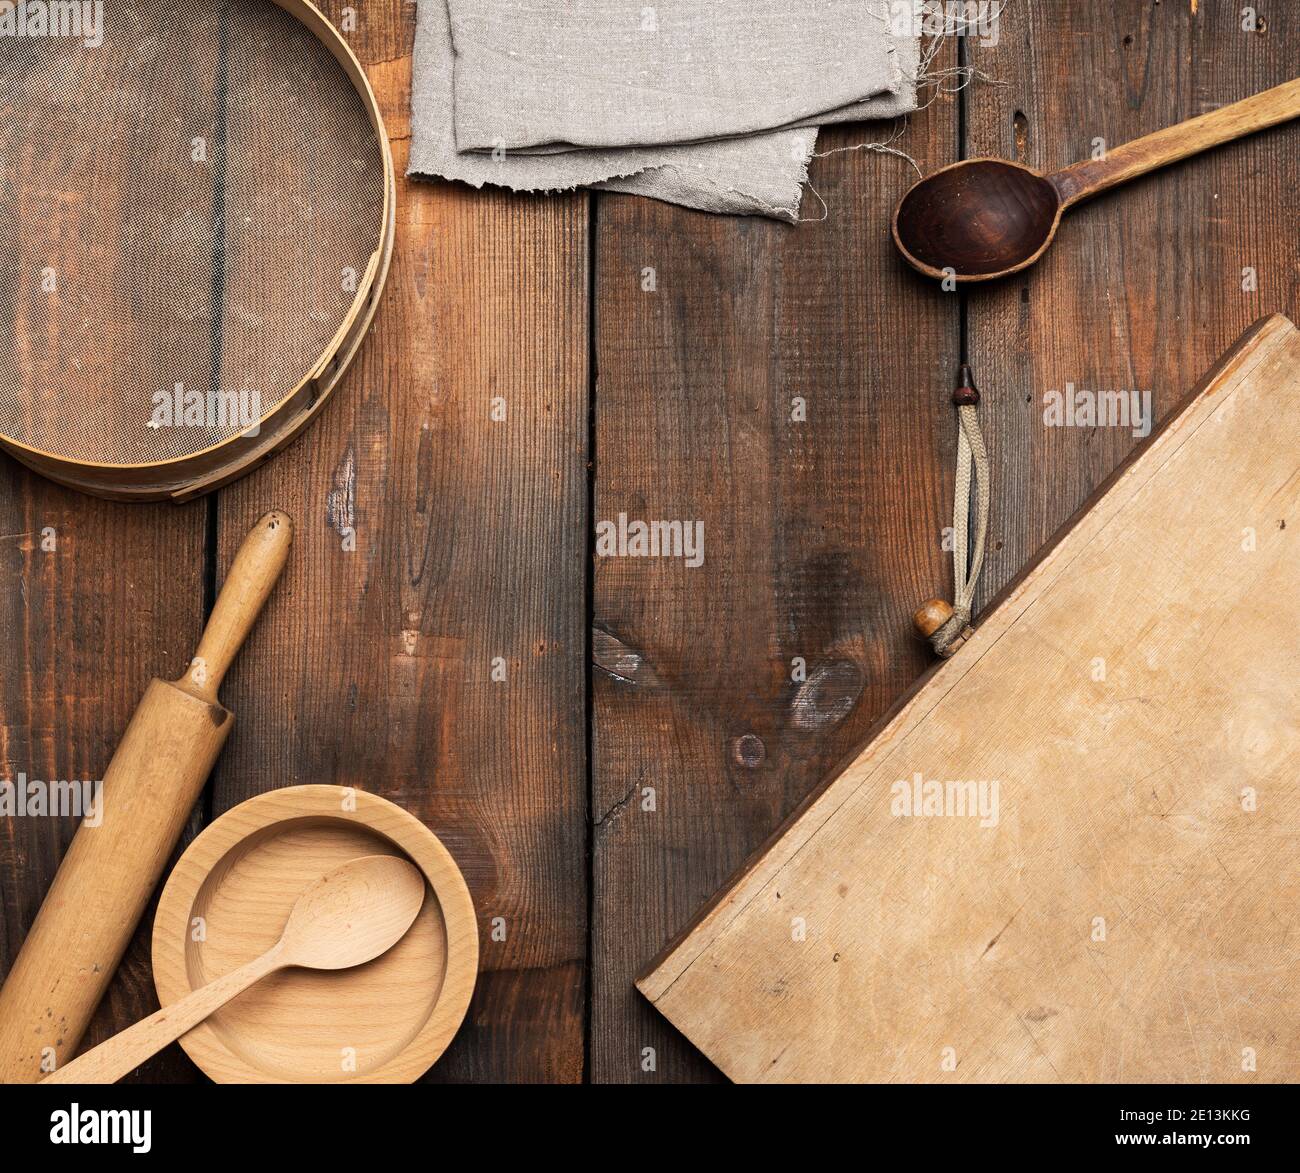 Sehr alte Holzküche Vintage-Artikel: Sieb, Nudelholz, leere Löffel und runde Teller auf braunem Holztisch, Draufsicht Stockfoto